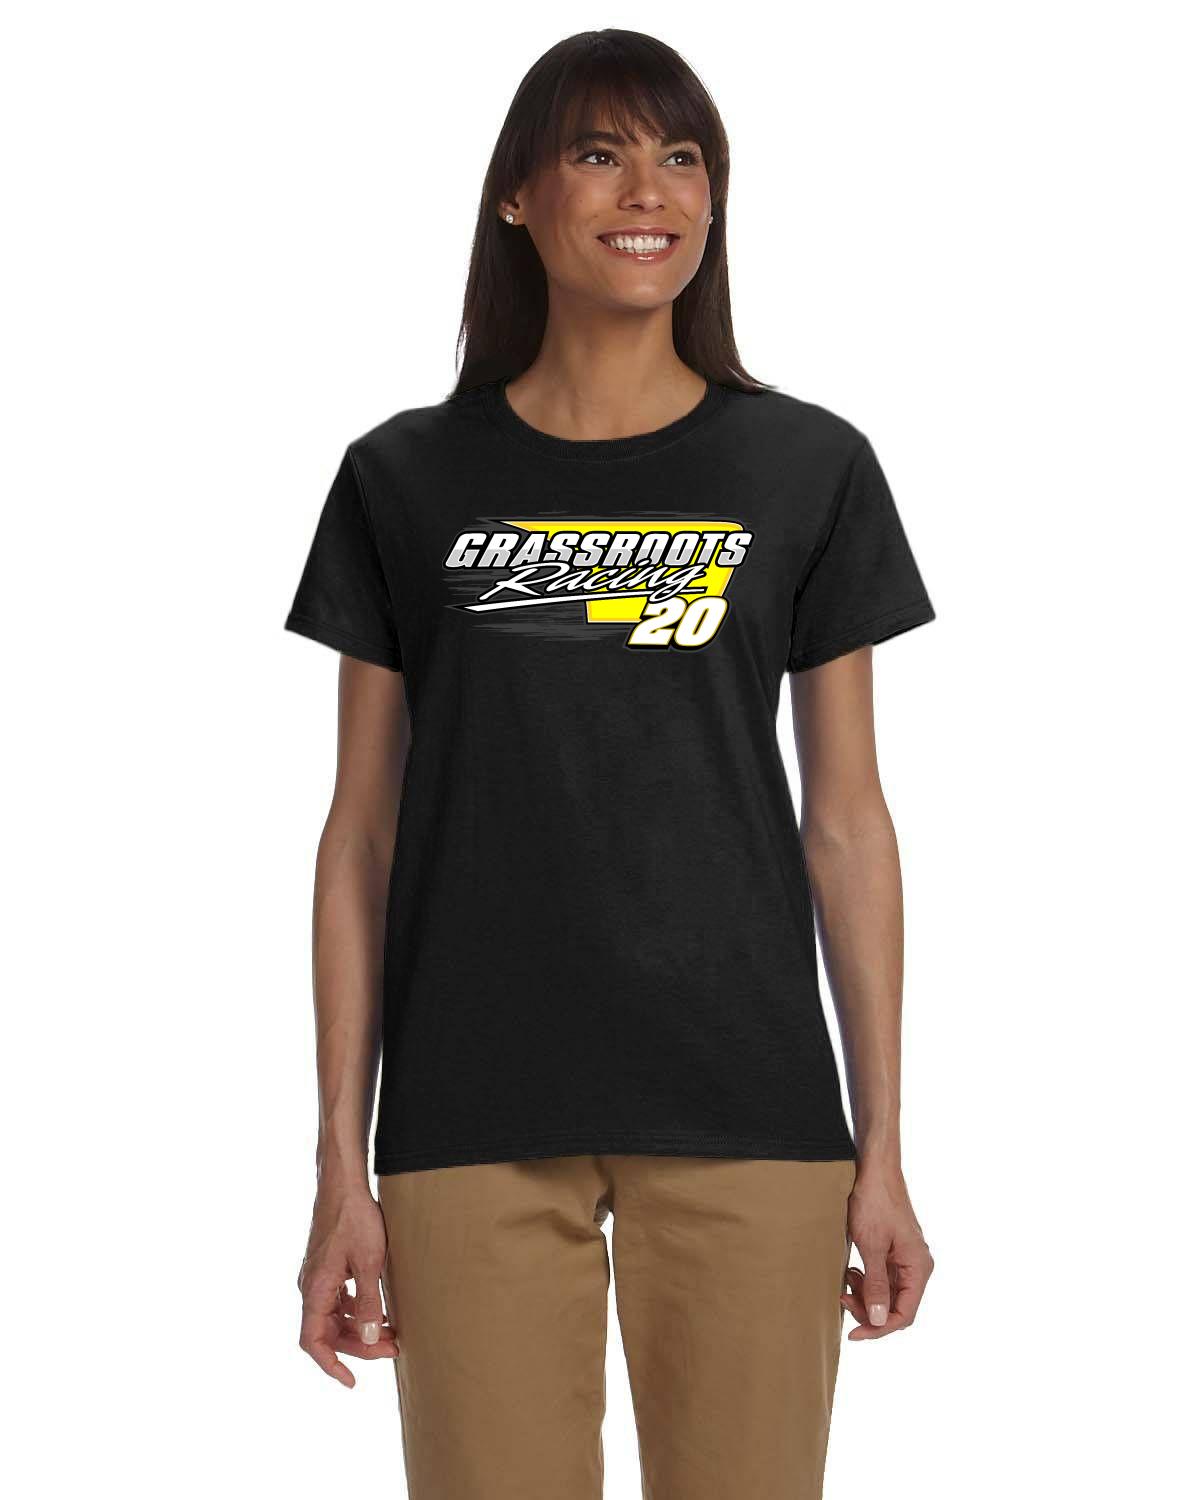 Cole McFadden / Grassroots Racing Women's tshirt